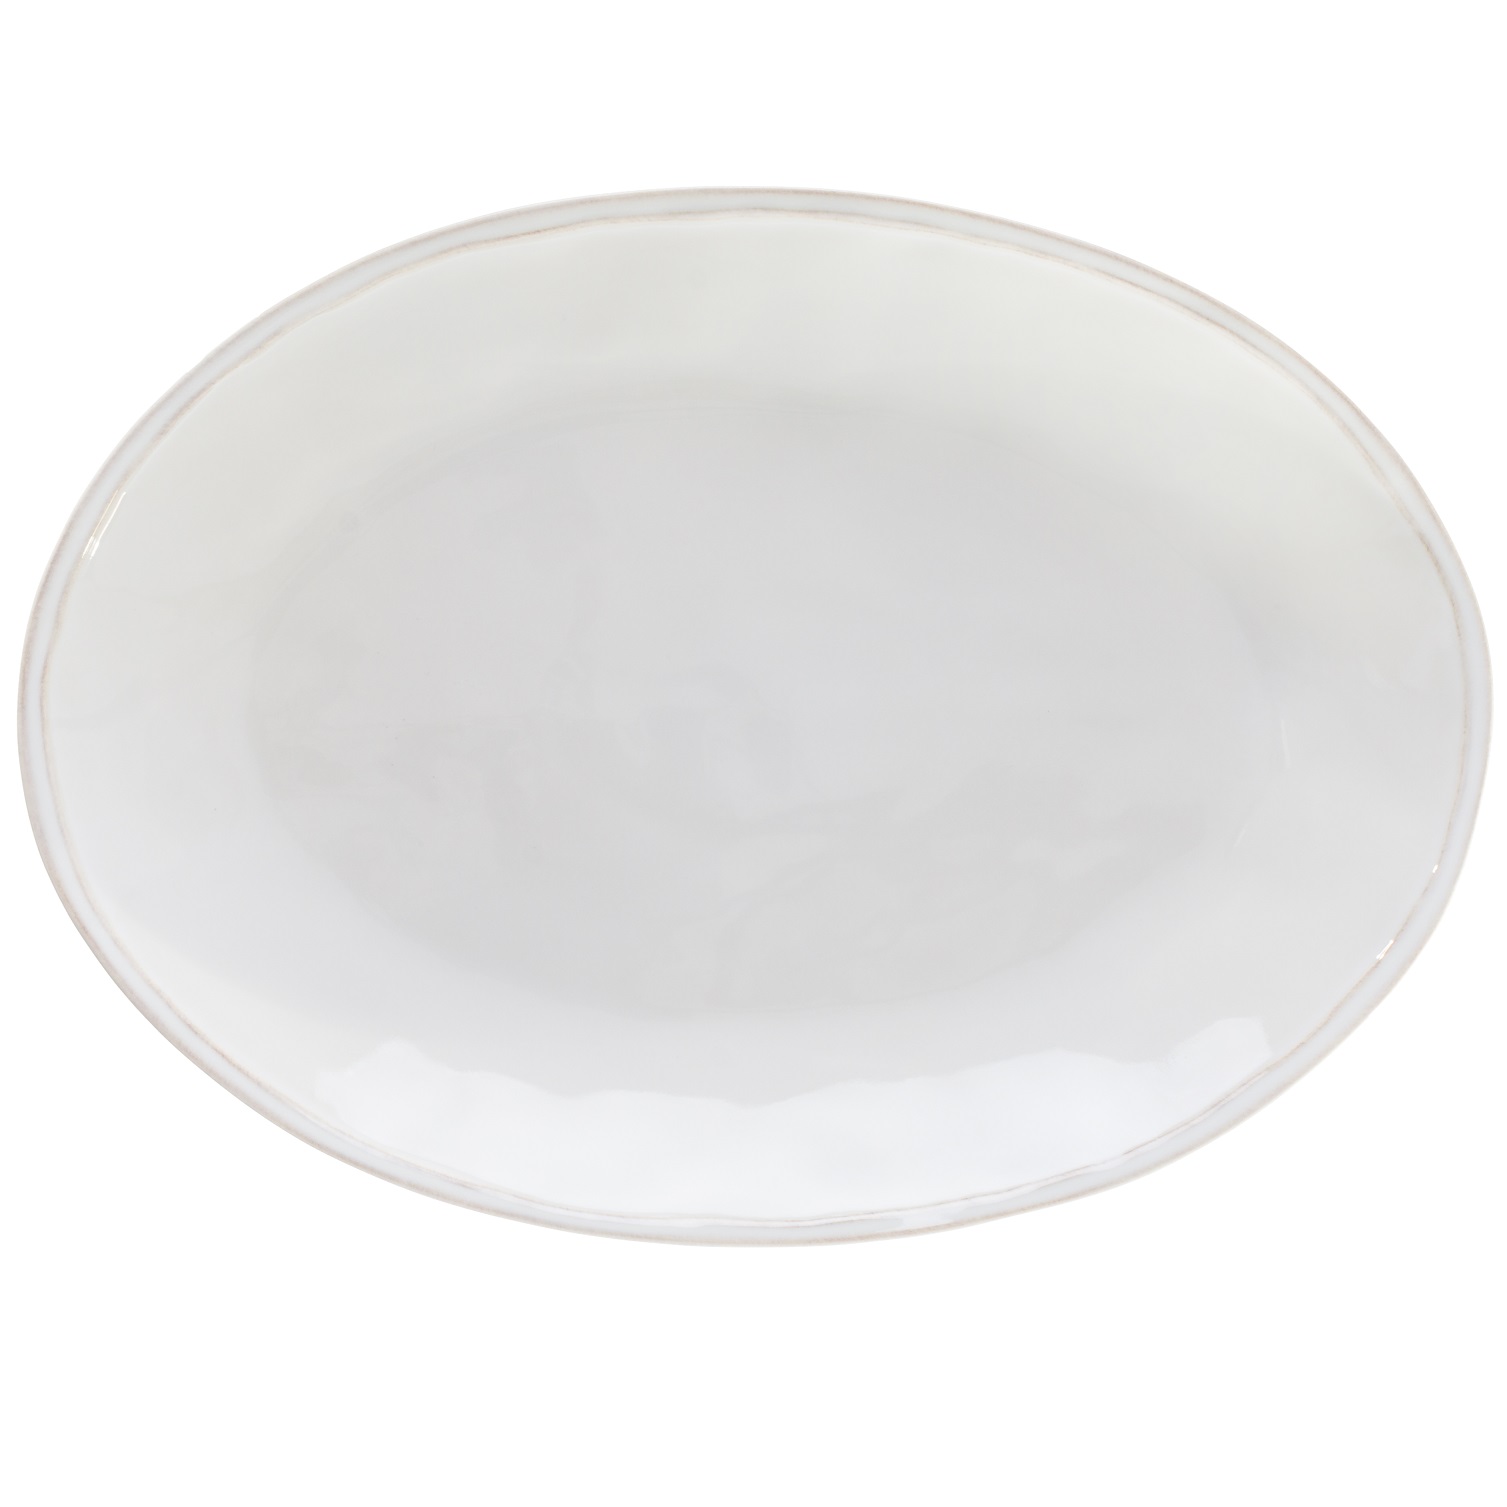 Fontana White Oval Platter 40cm Gift